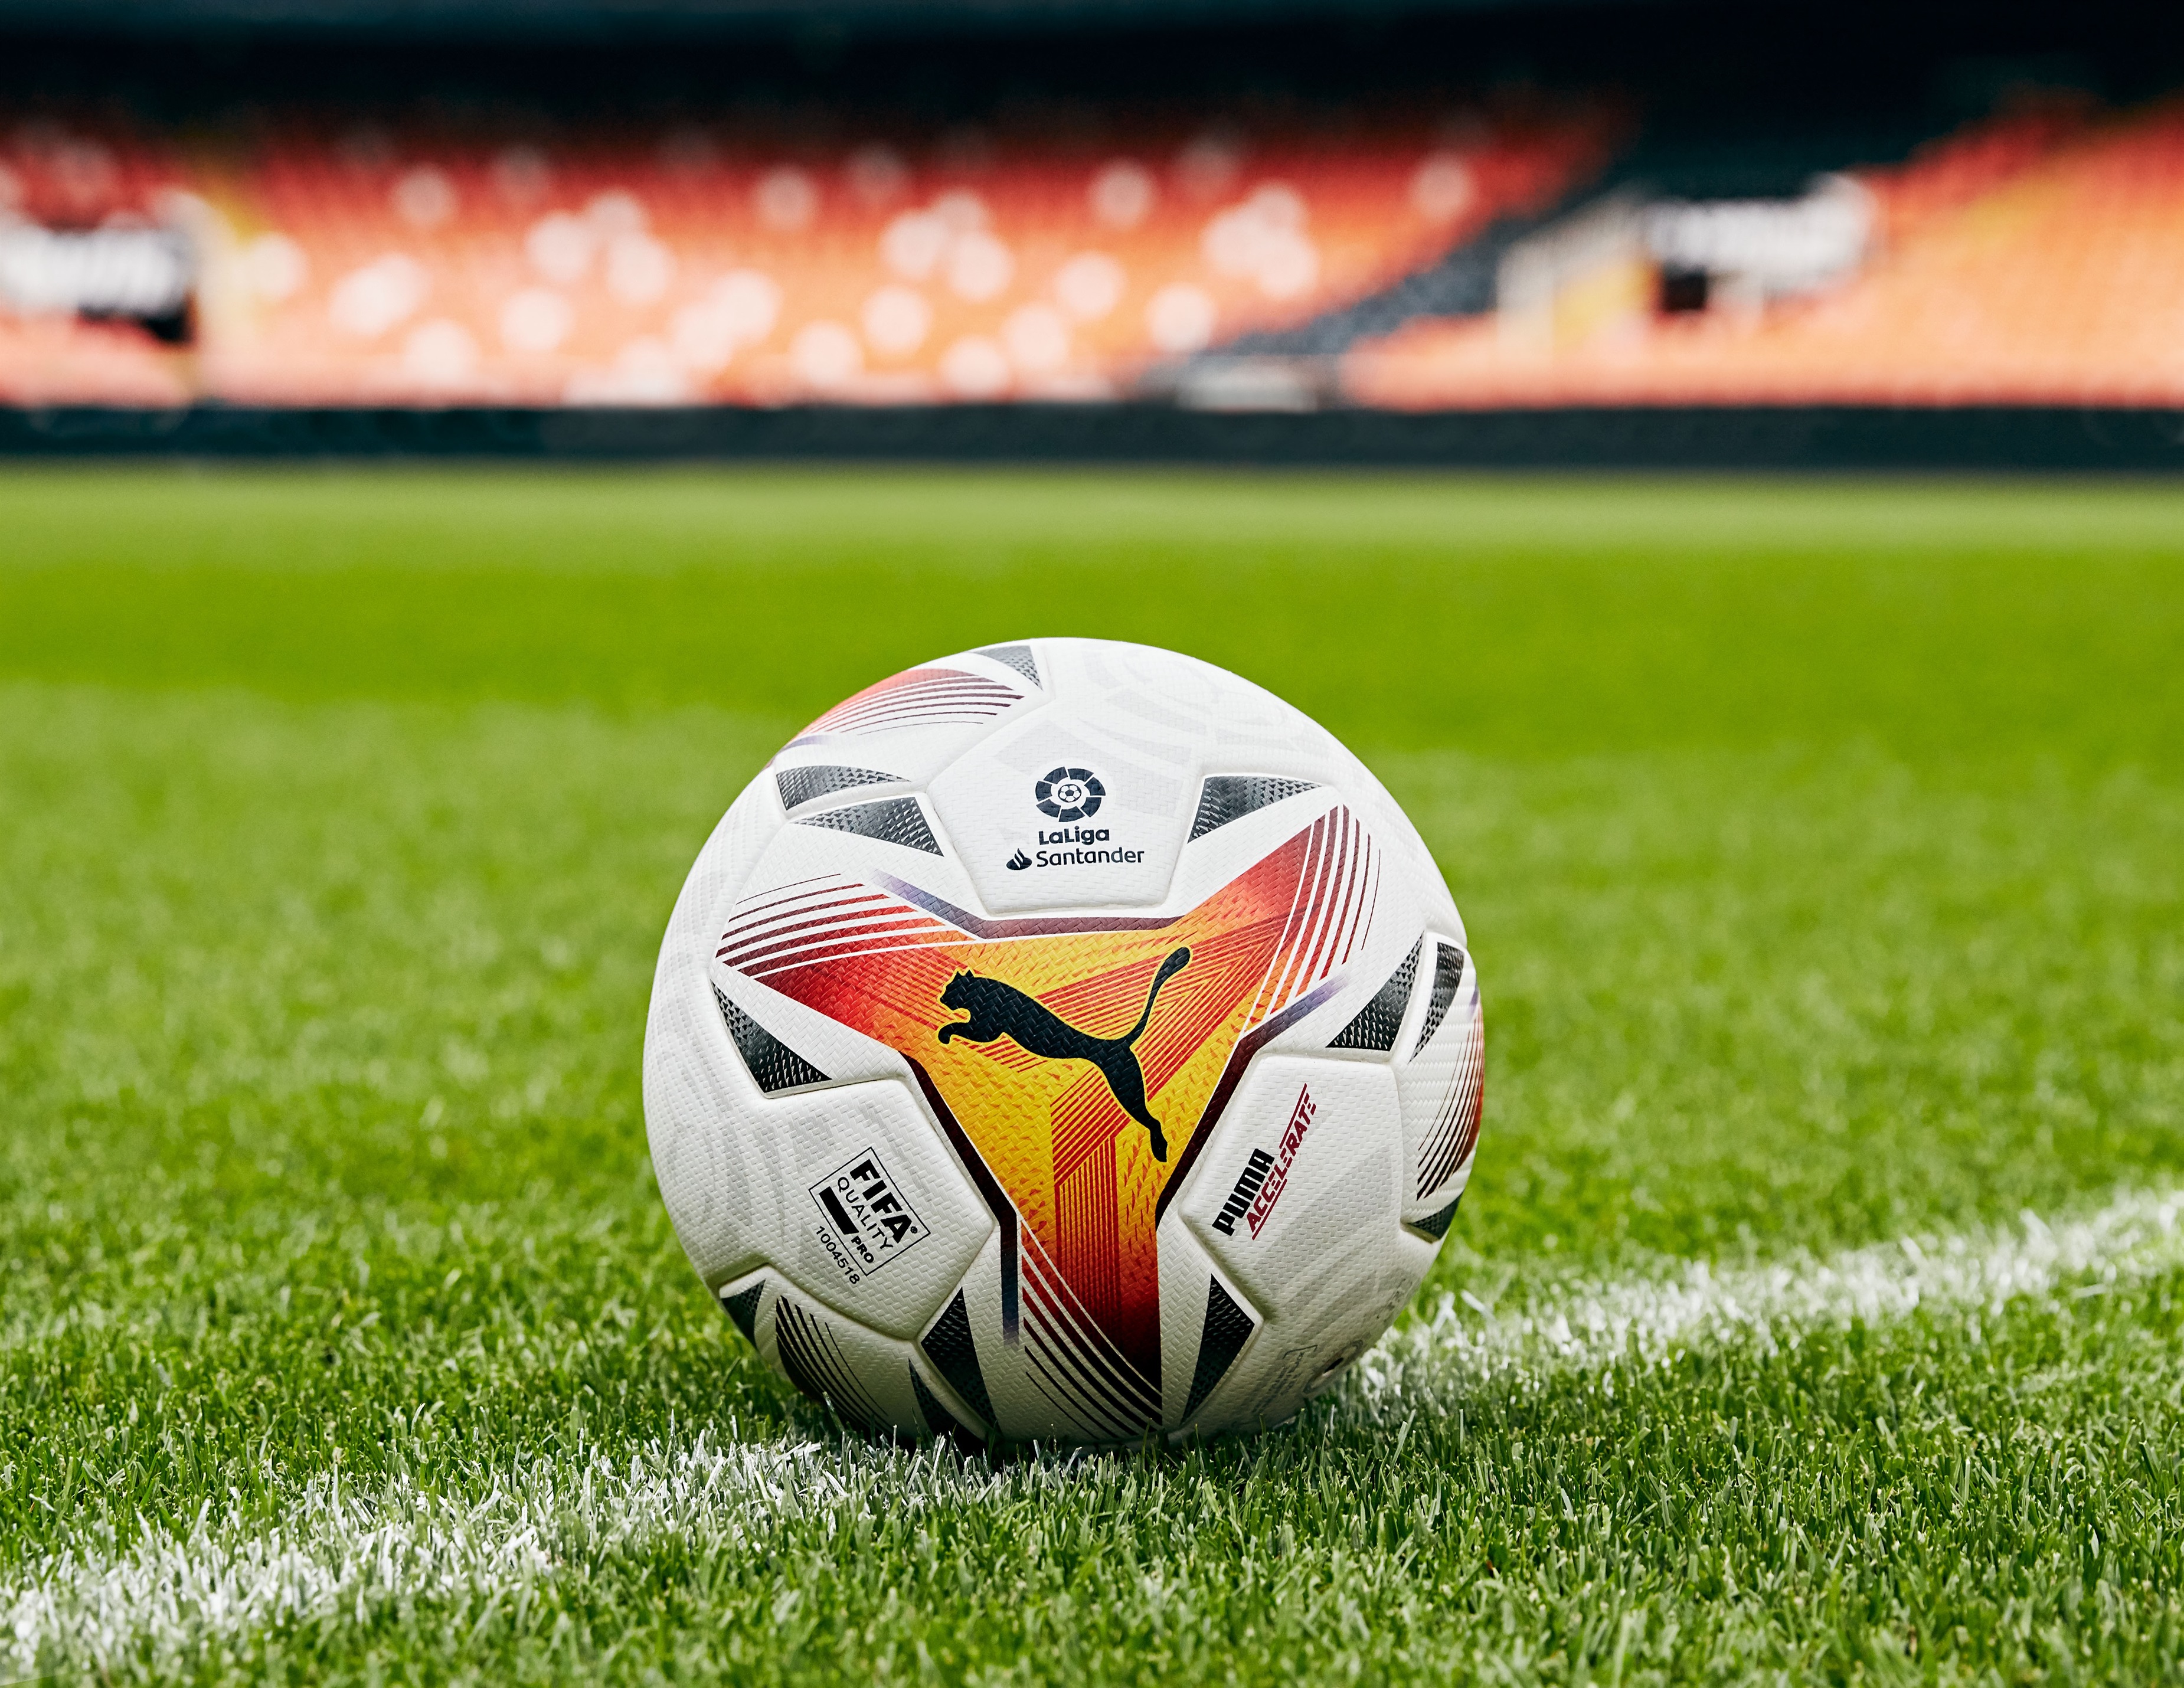 Fútbol.- Puma LaLiga presentan el balón oficial Accelerate para la temporada 2021-22 - Infobae